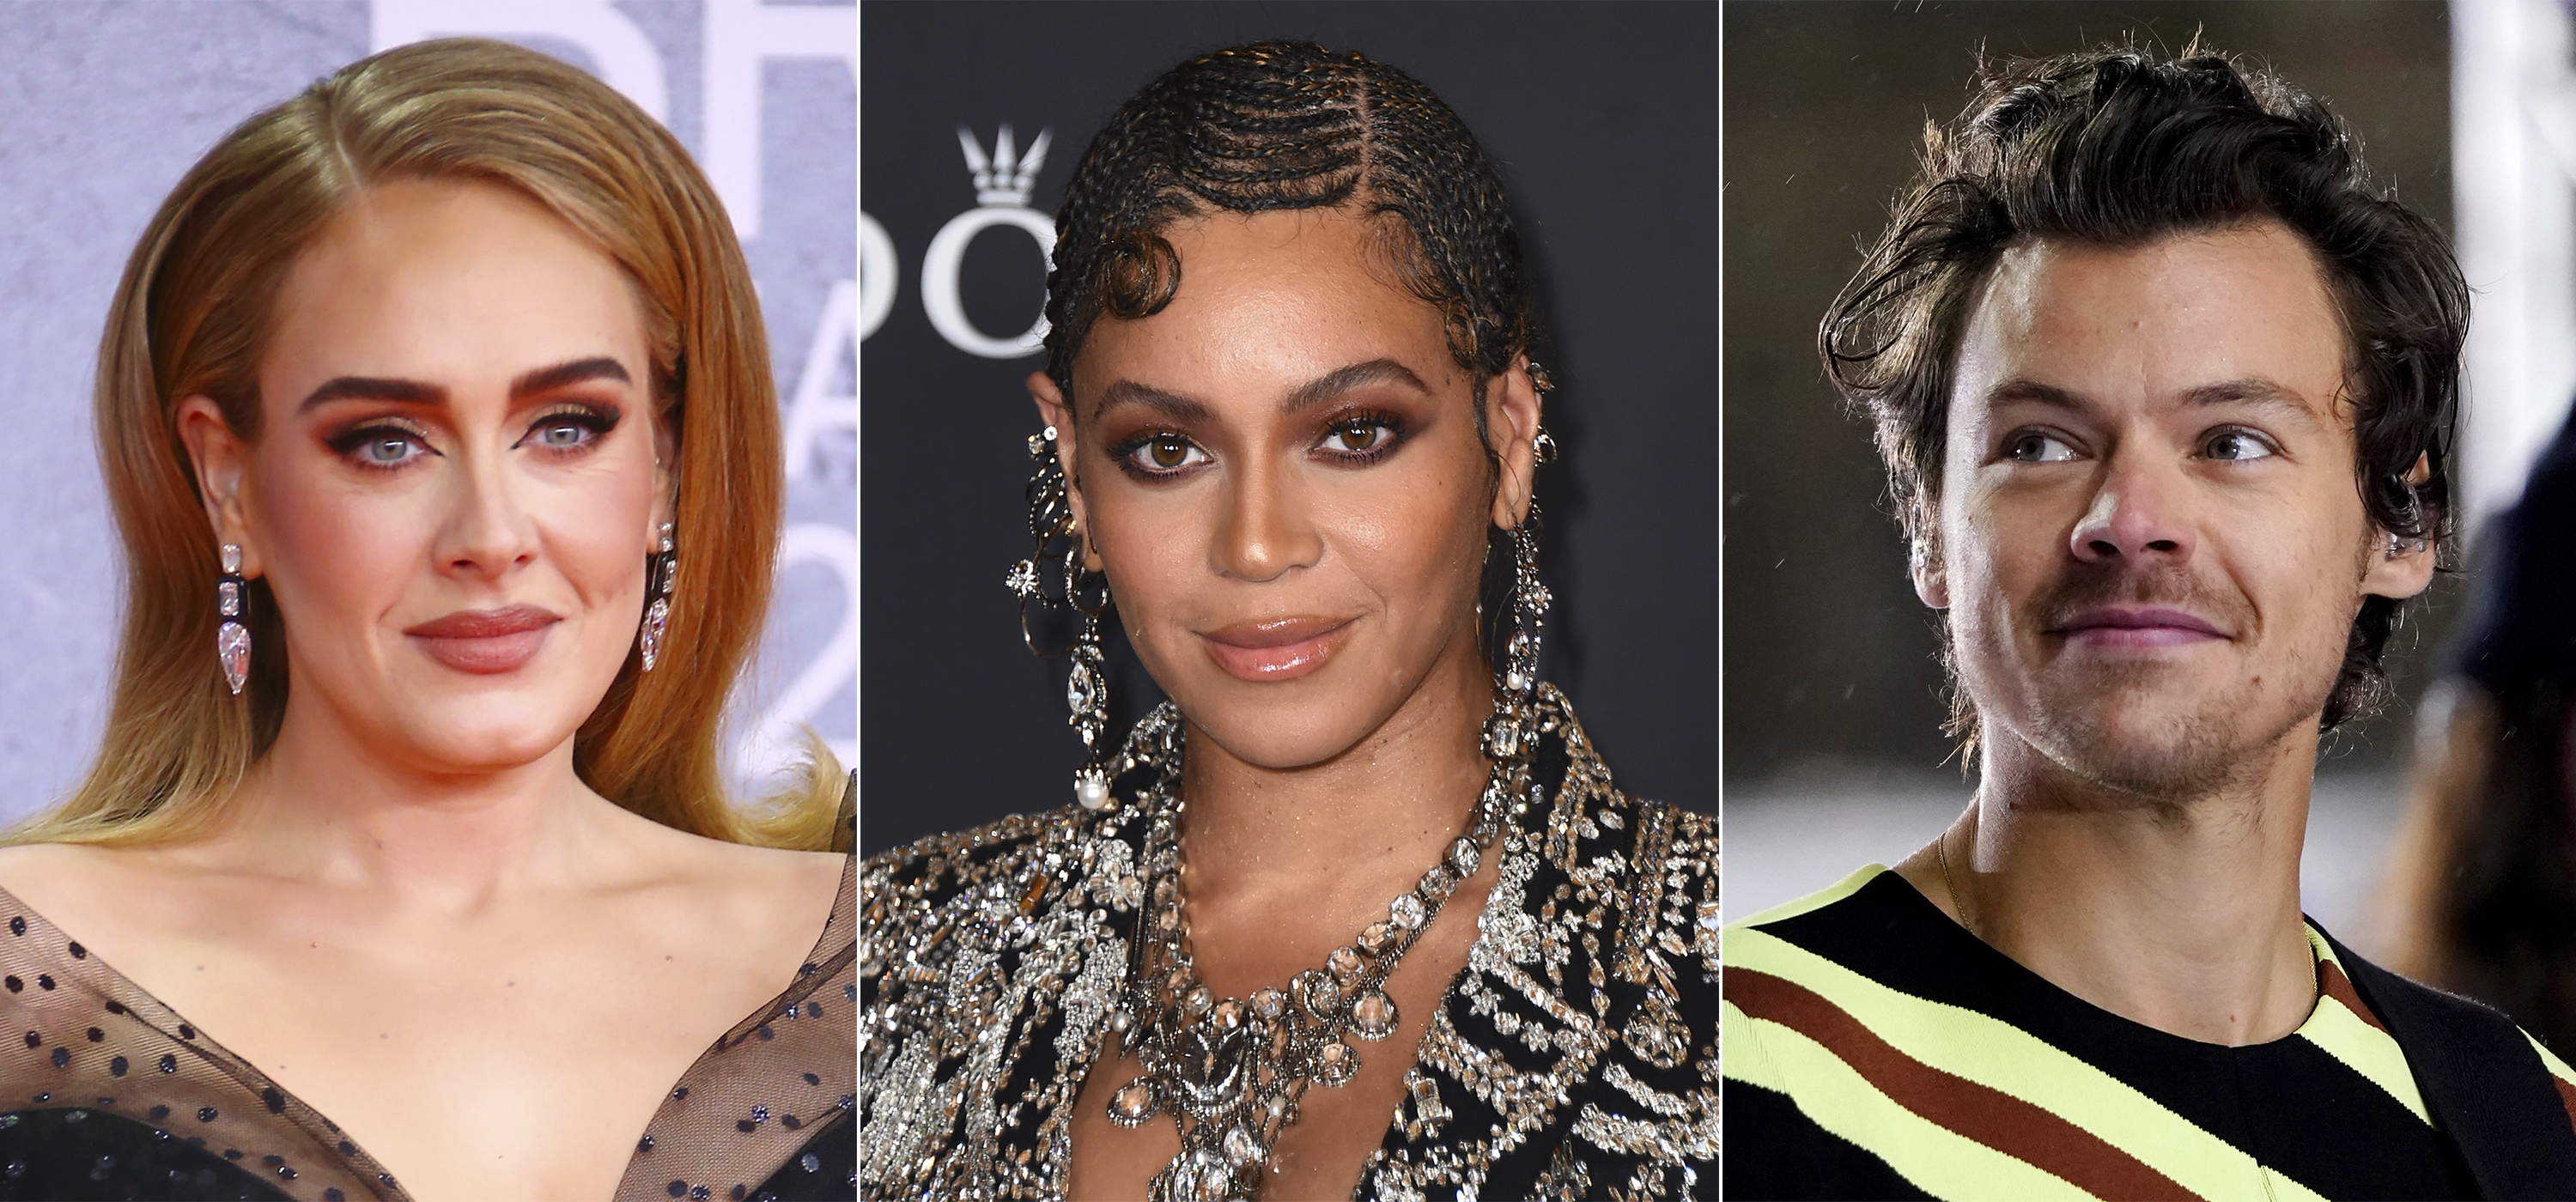 En esta combinación de fotografías, Adele, de izquierda a derecha, Beyonce y Harry Styles quienes son de los artistas más nominados a los Grammy que serán entregados el domingo. (Foto AP)